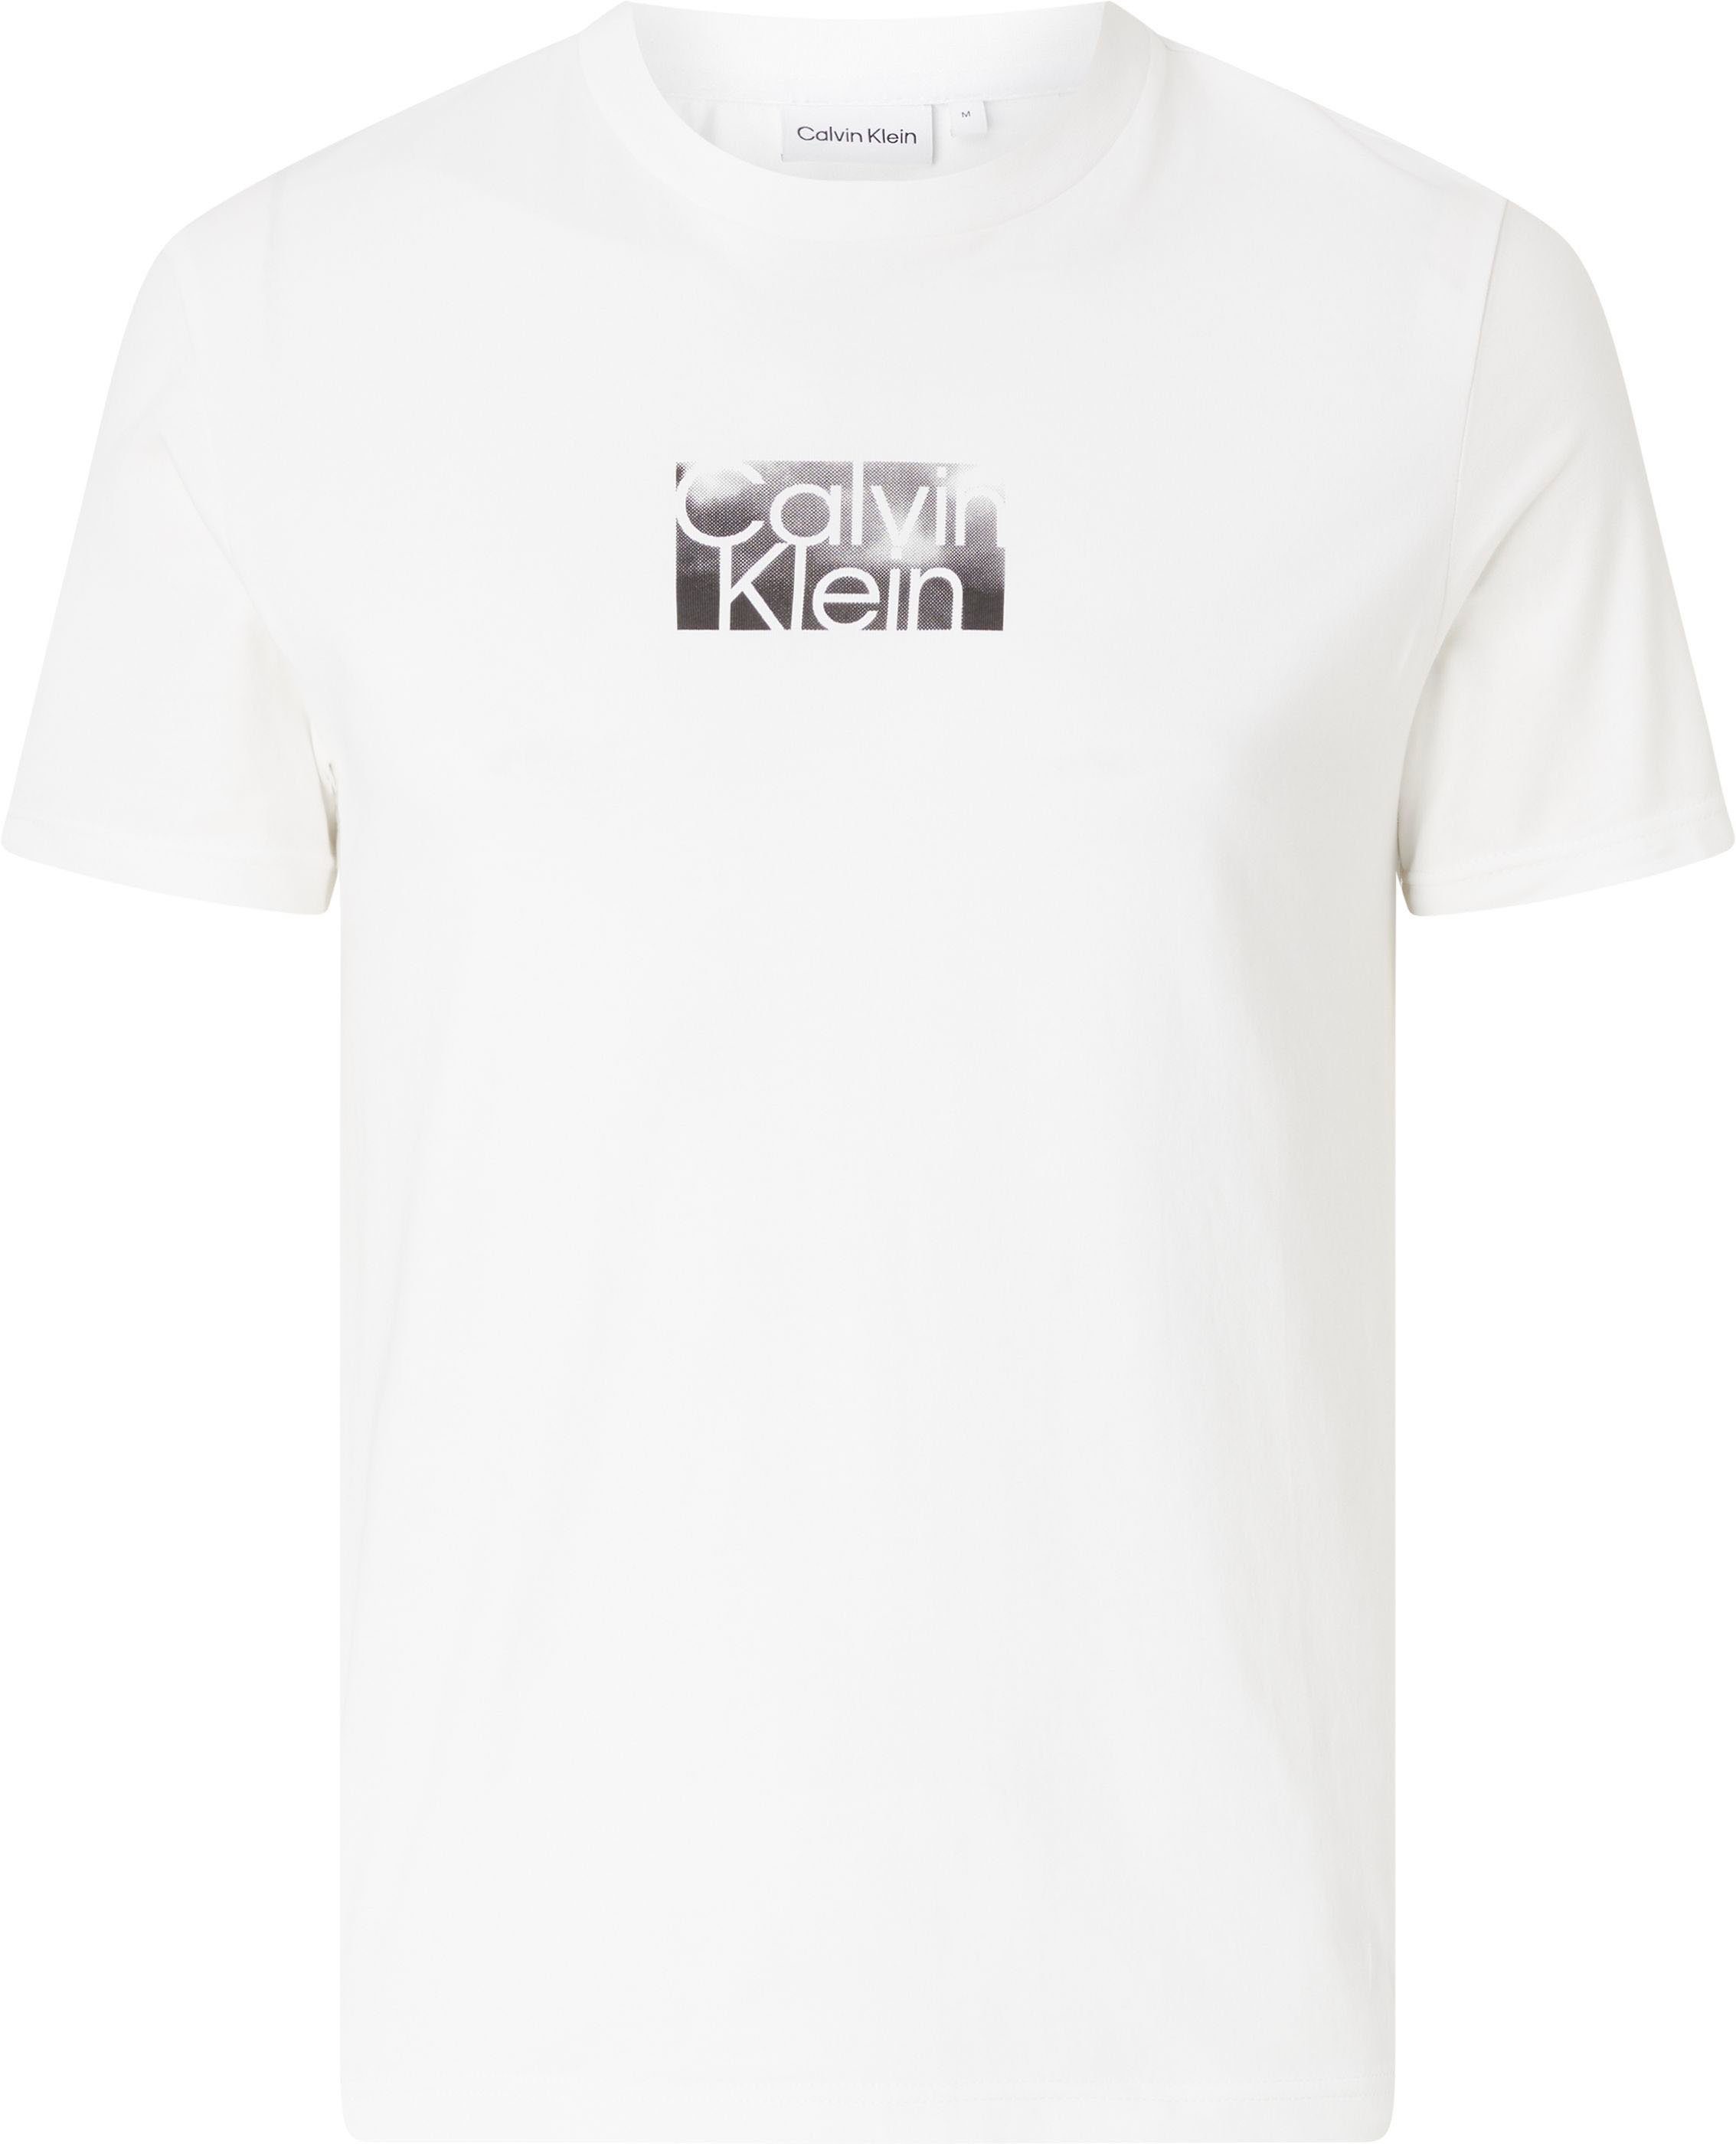 Das kombiniert Klein Calvin kann Alltag im T-Shirt werden ideal T-Shirt mit Big&Tall Logoschriftzug,